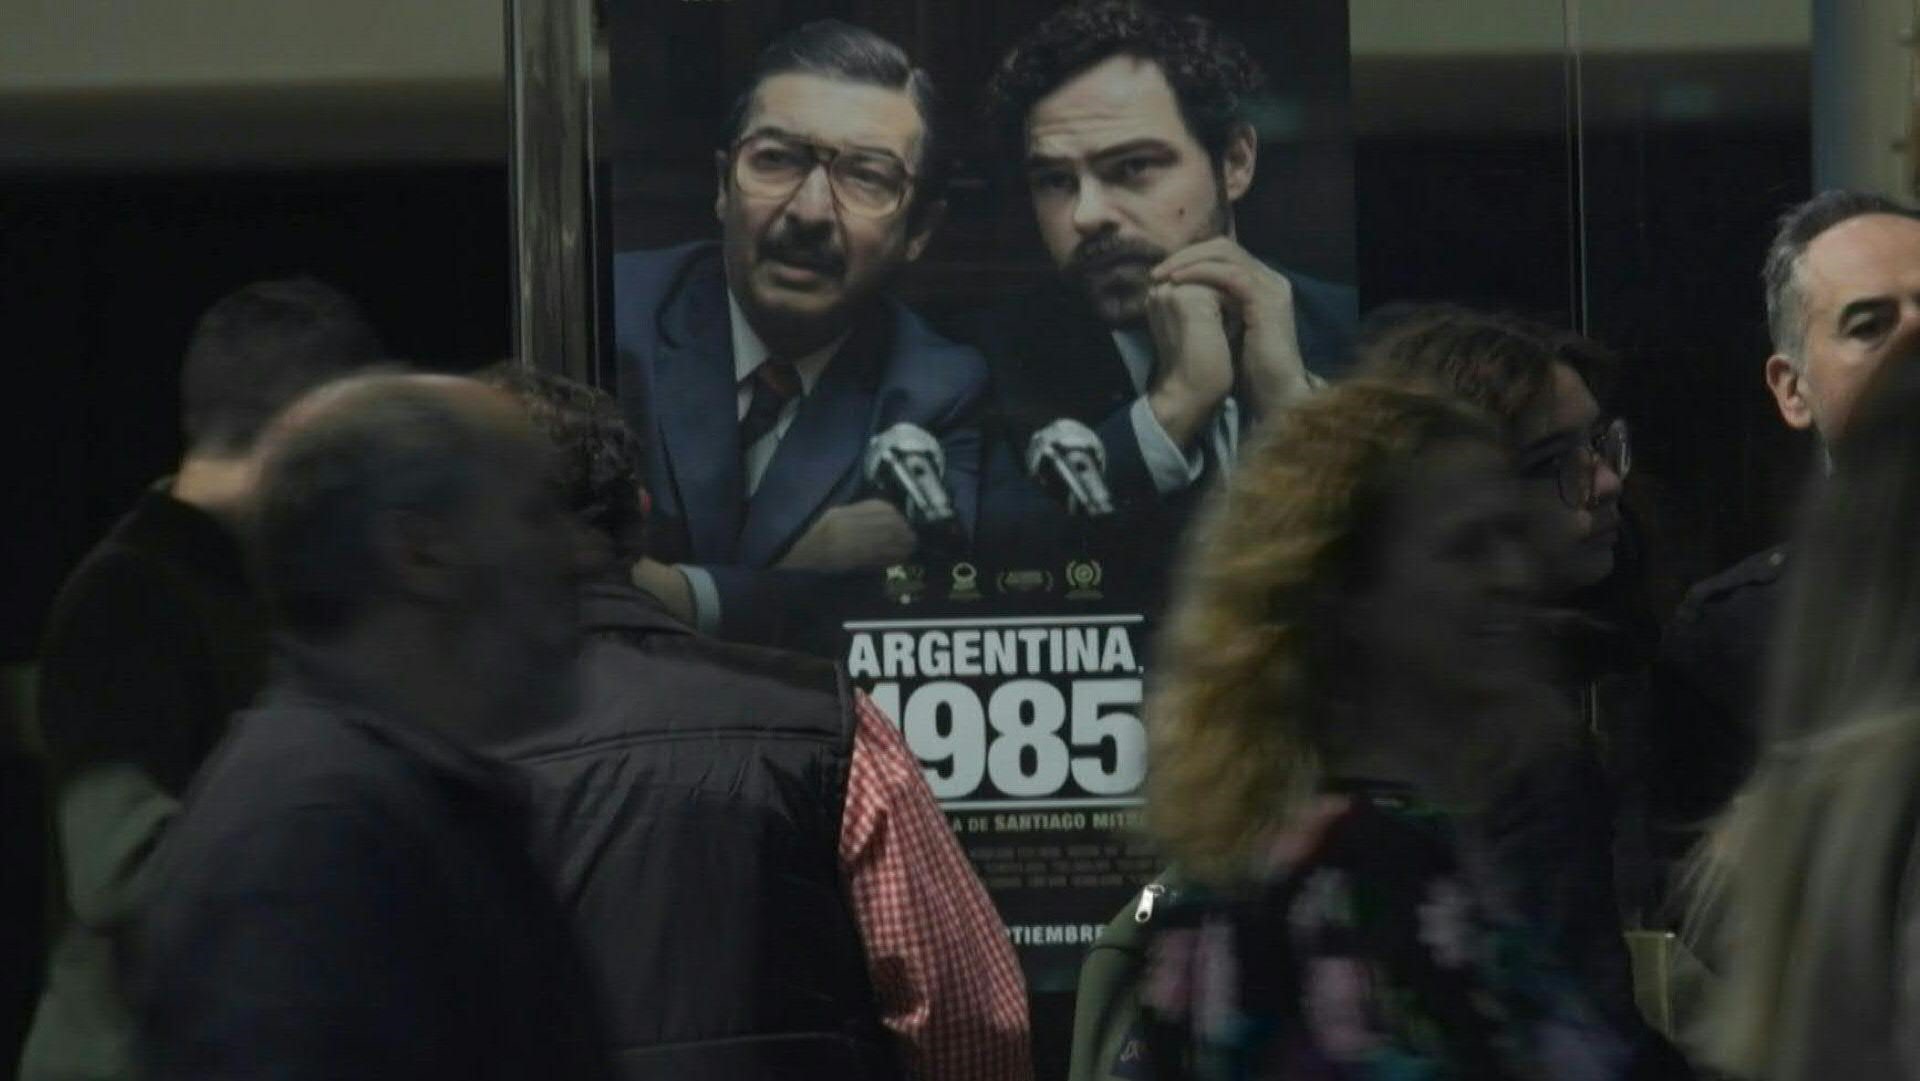 El filme 'Argentina, 1985' sobre el histórico juicio que condenó a los comandantes de la dictadura (1976-1983)